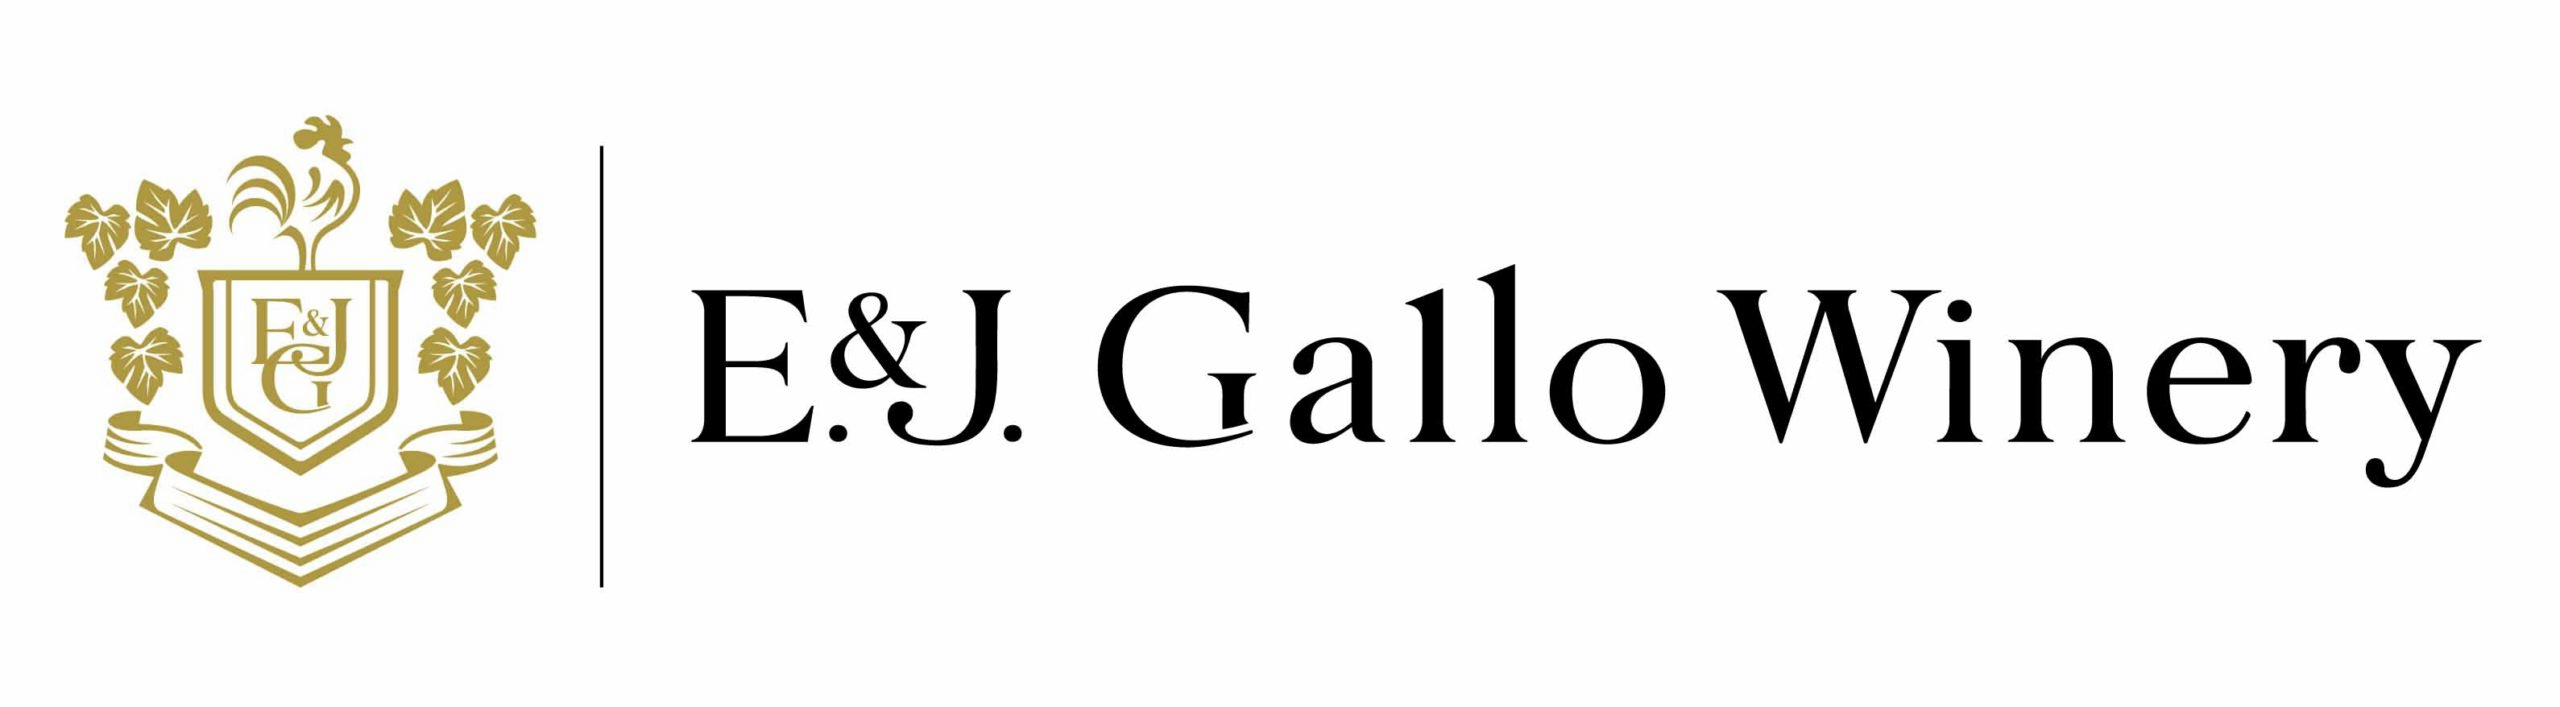 E&J Gallo winery